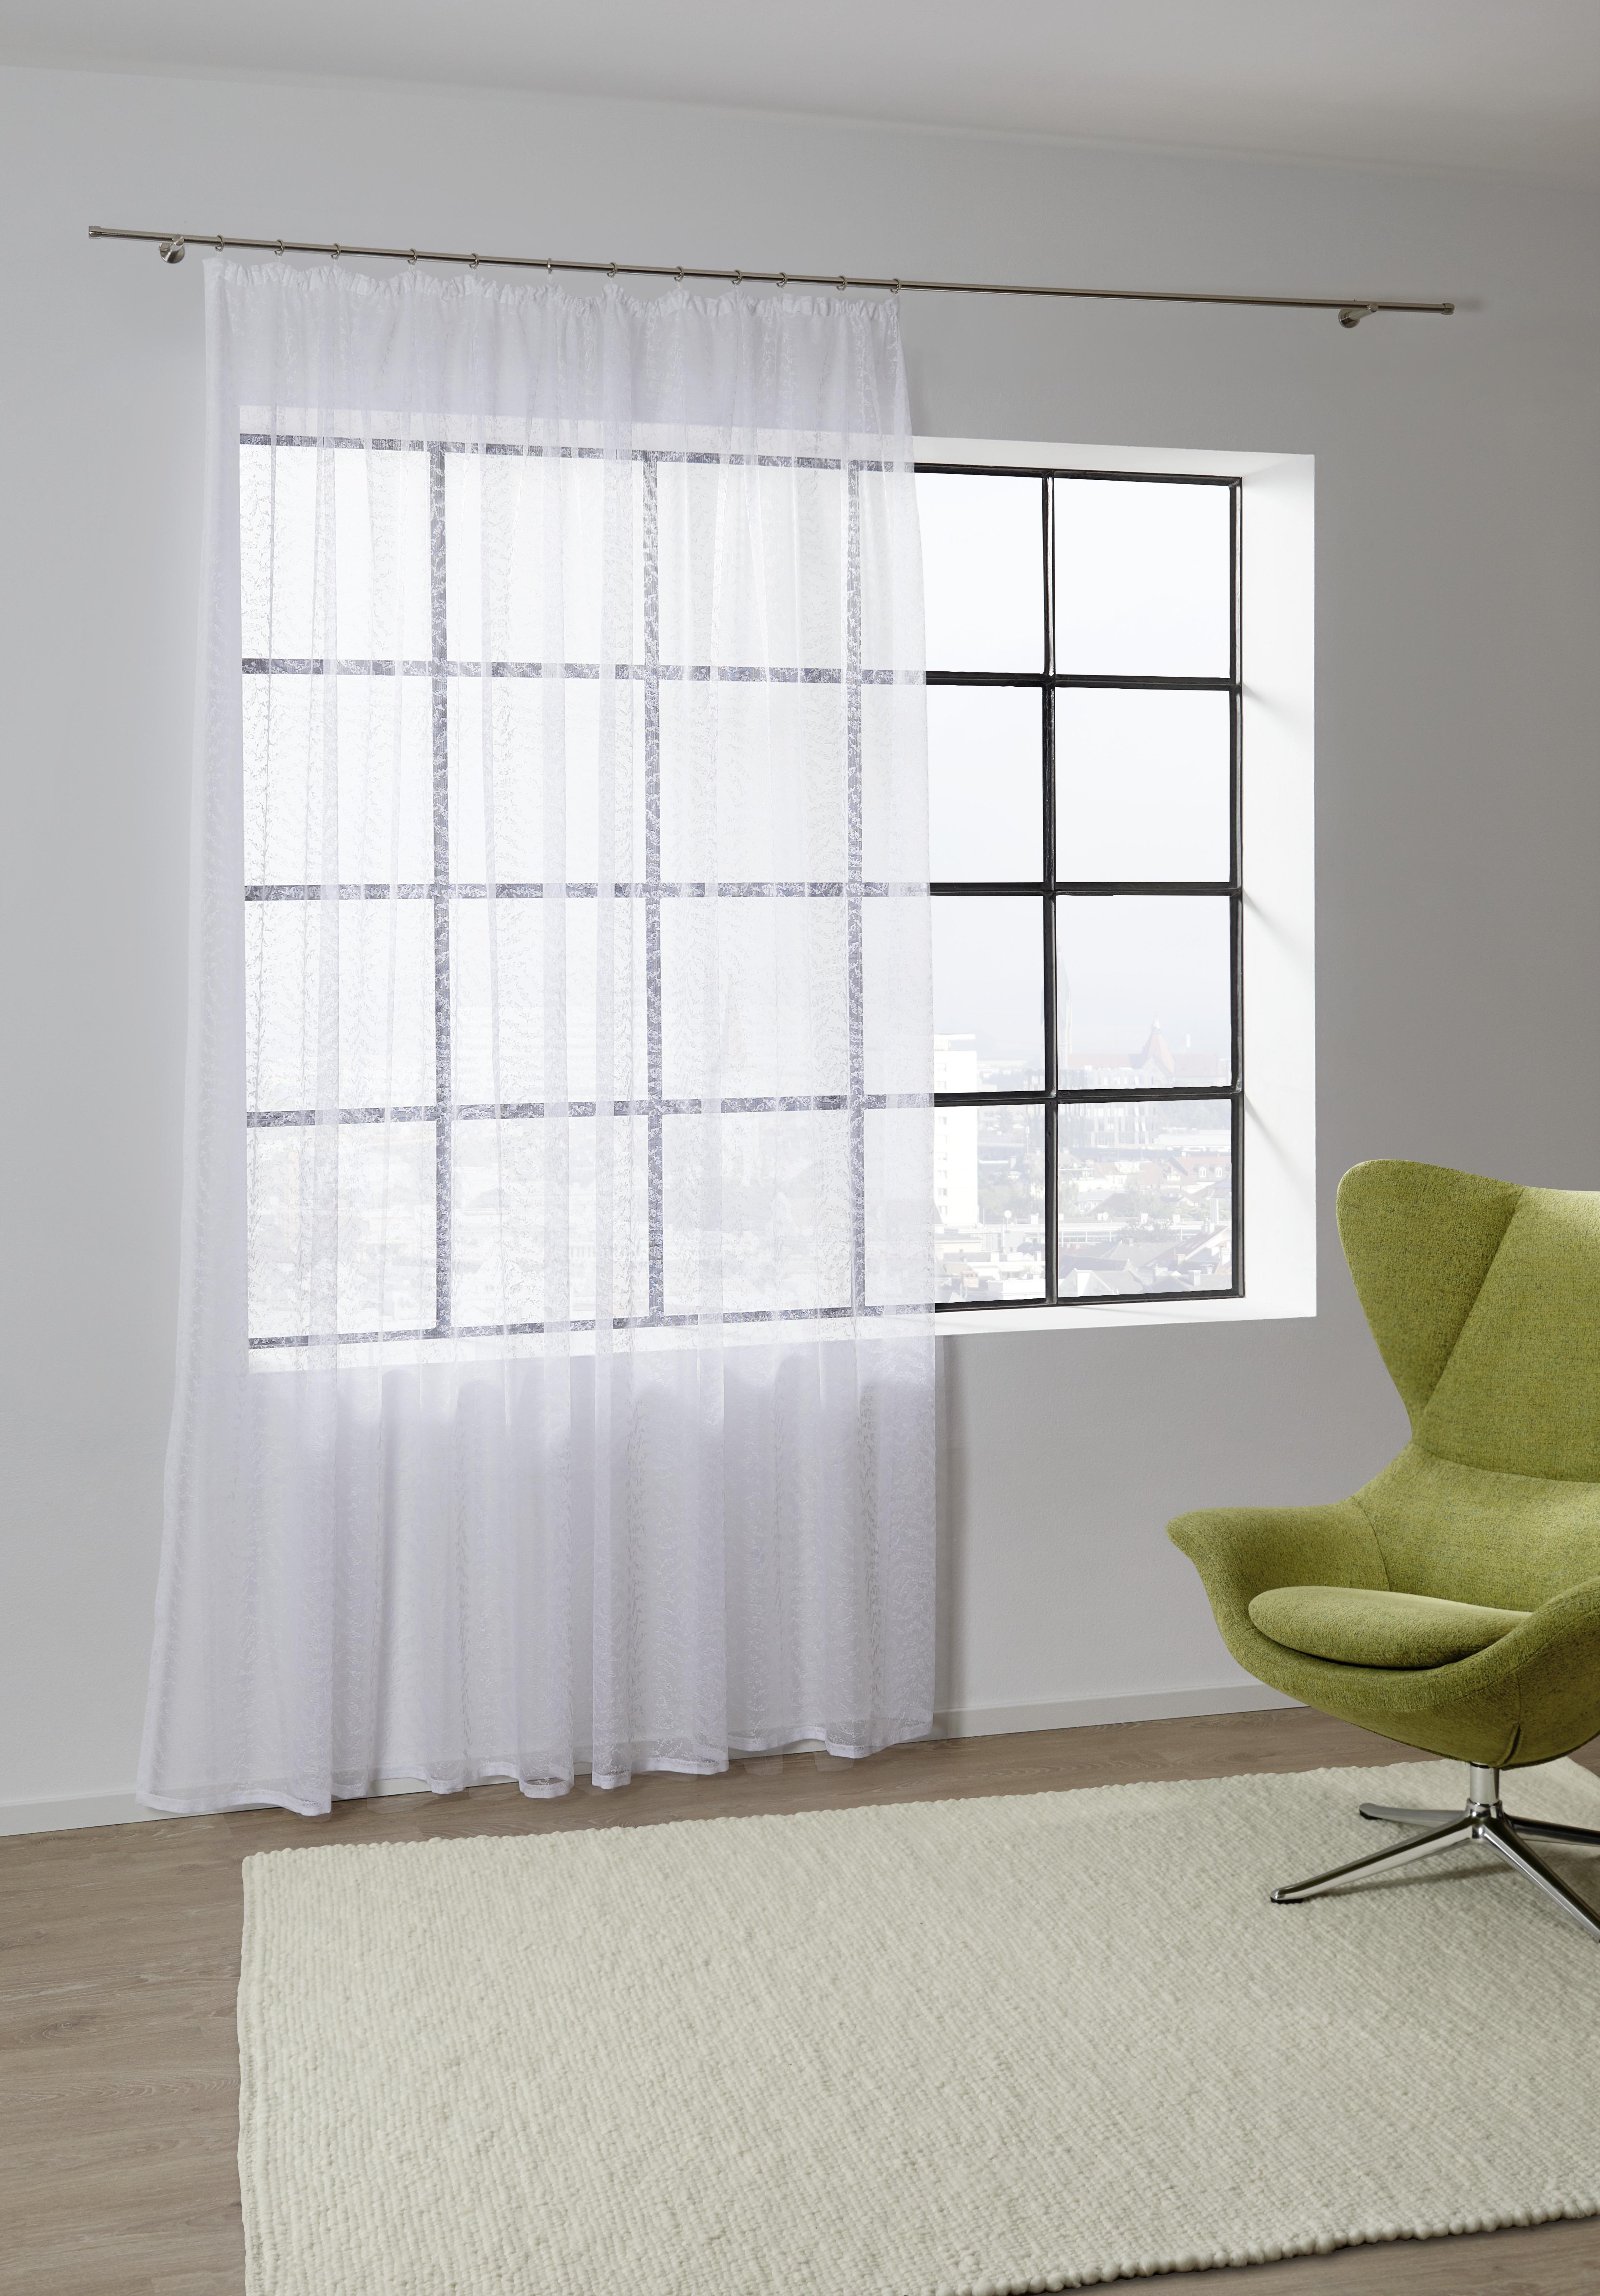 Kusová Záclona Rita Store 3, 300/245cm - bílá, Konvenční, textil (300/245cm) - Modern Living